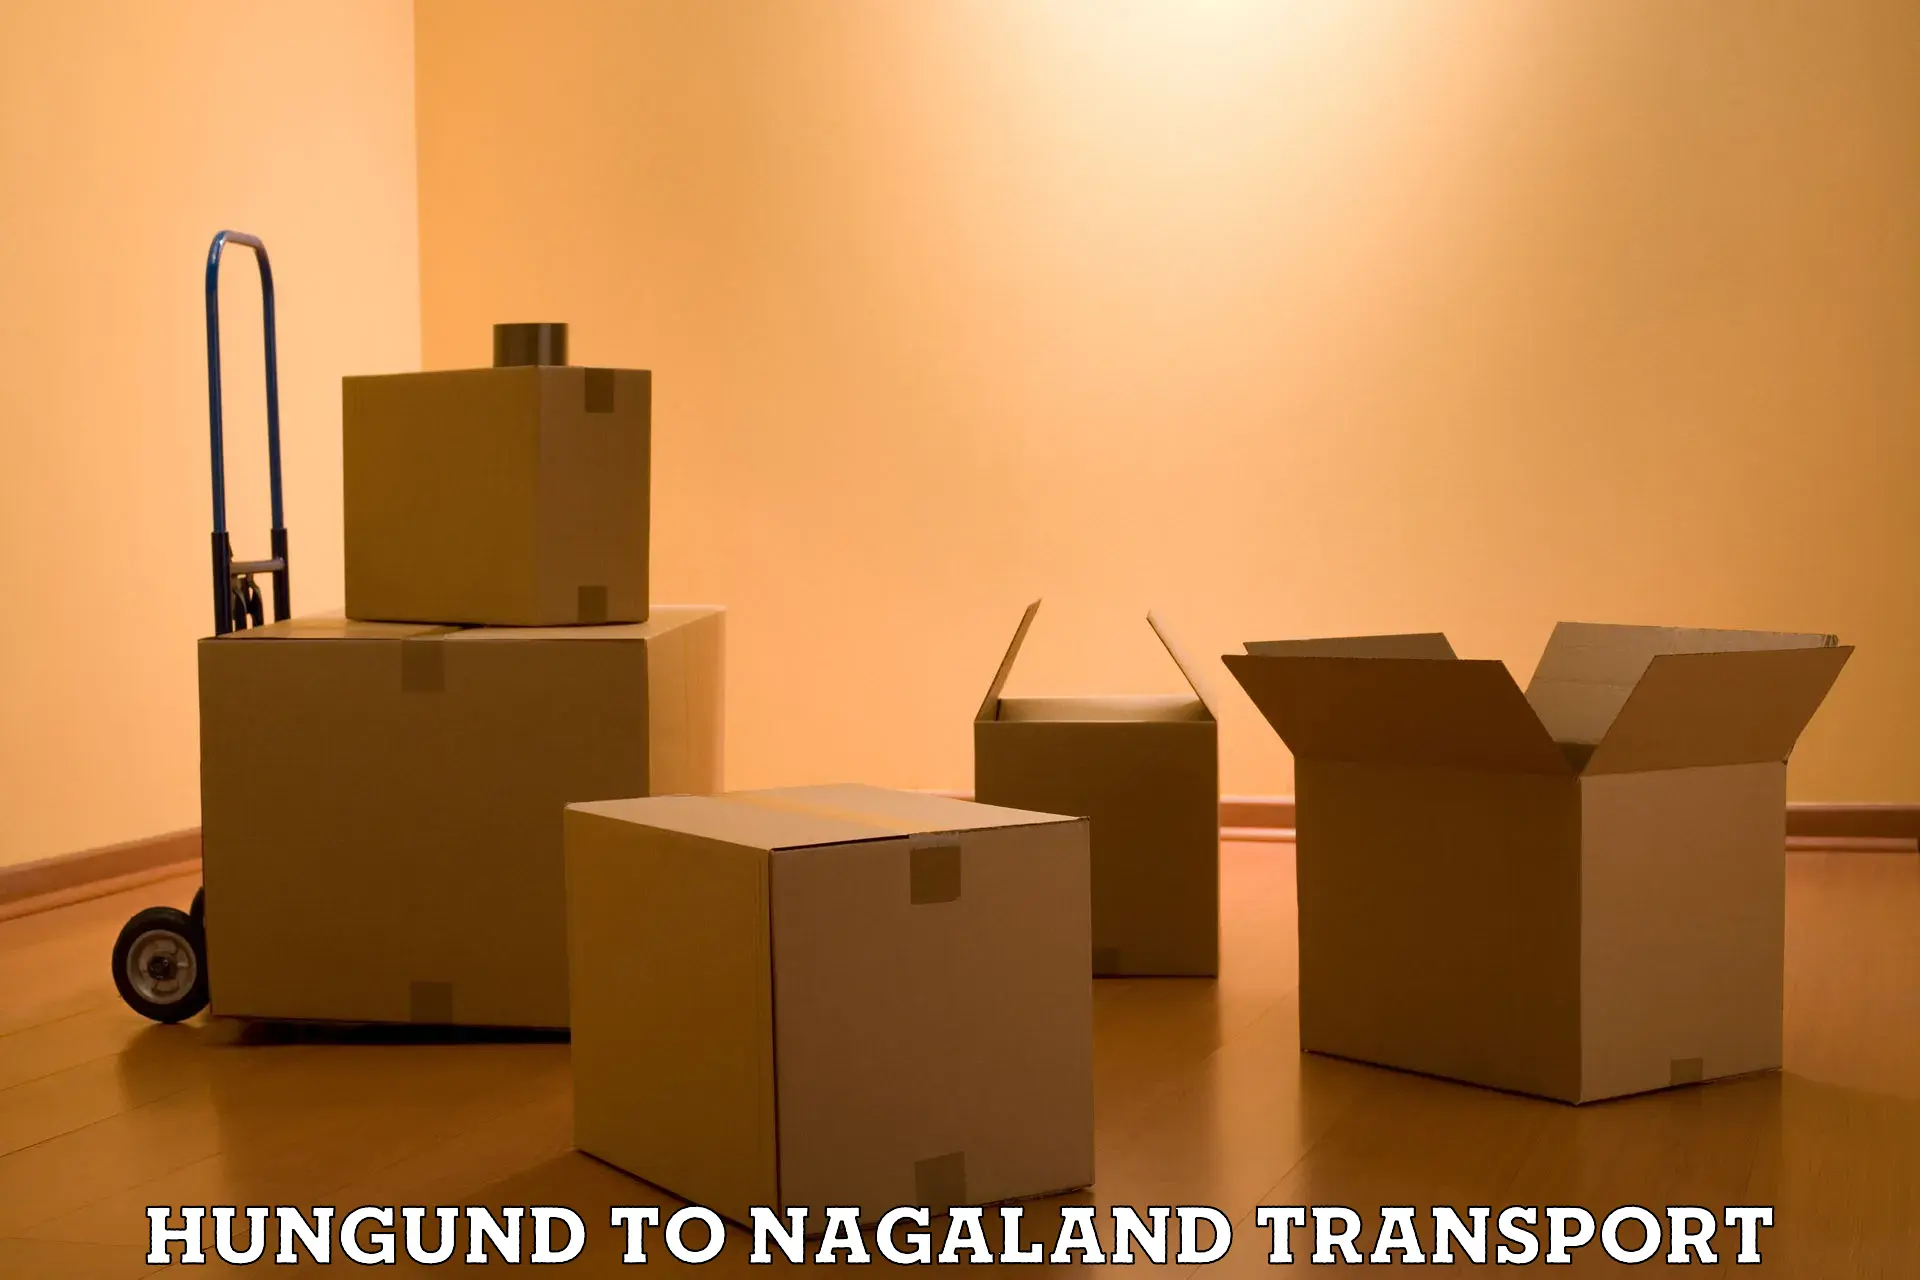 Furniture transport service Hungund to Dimapur